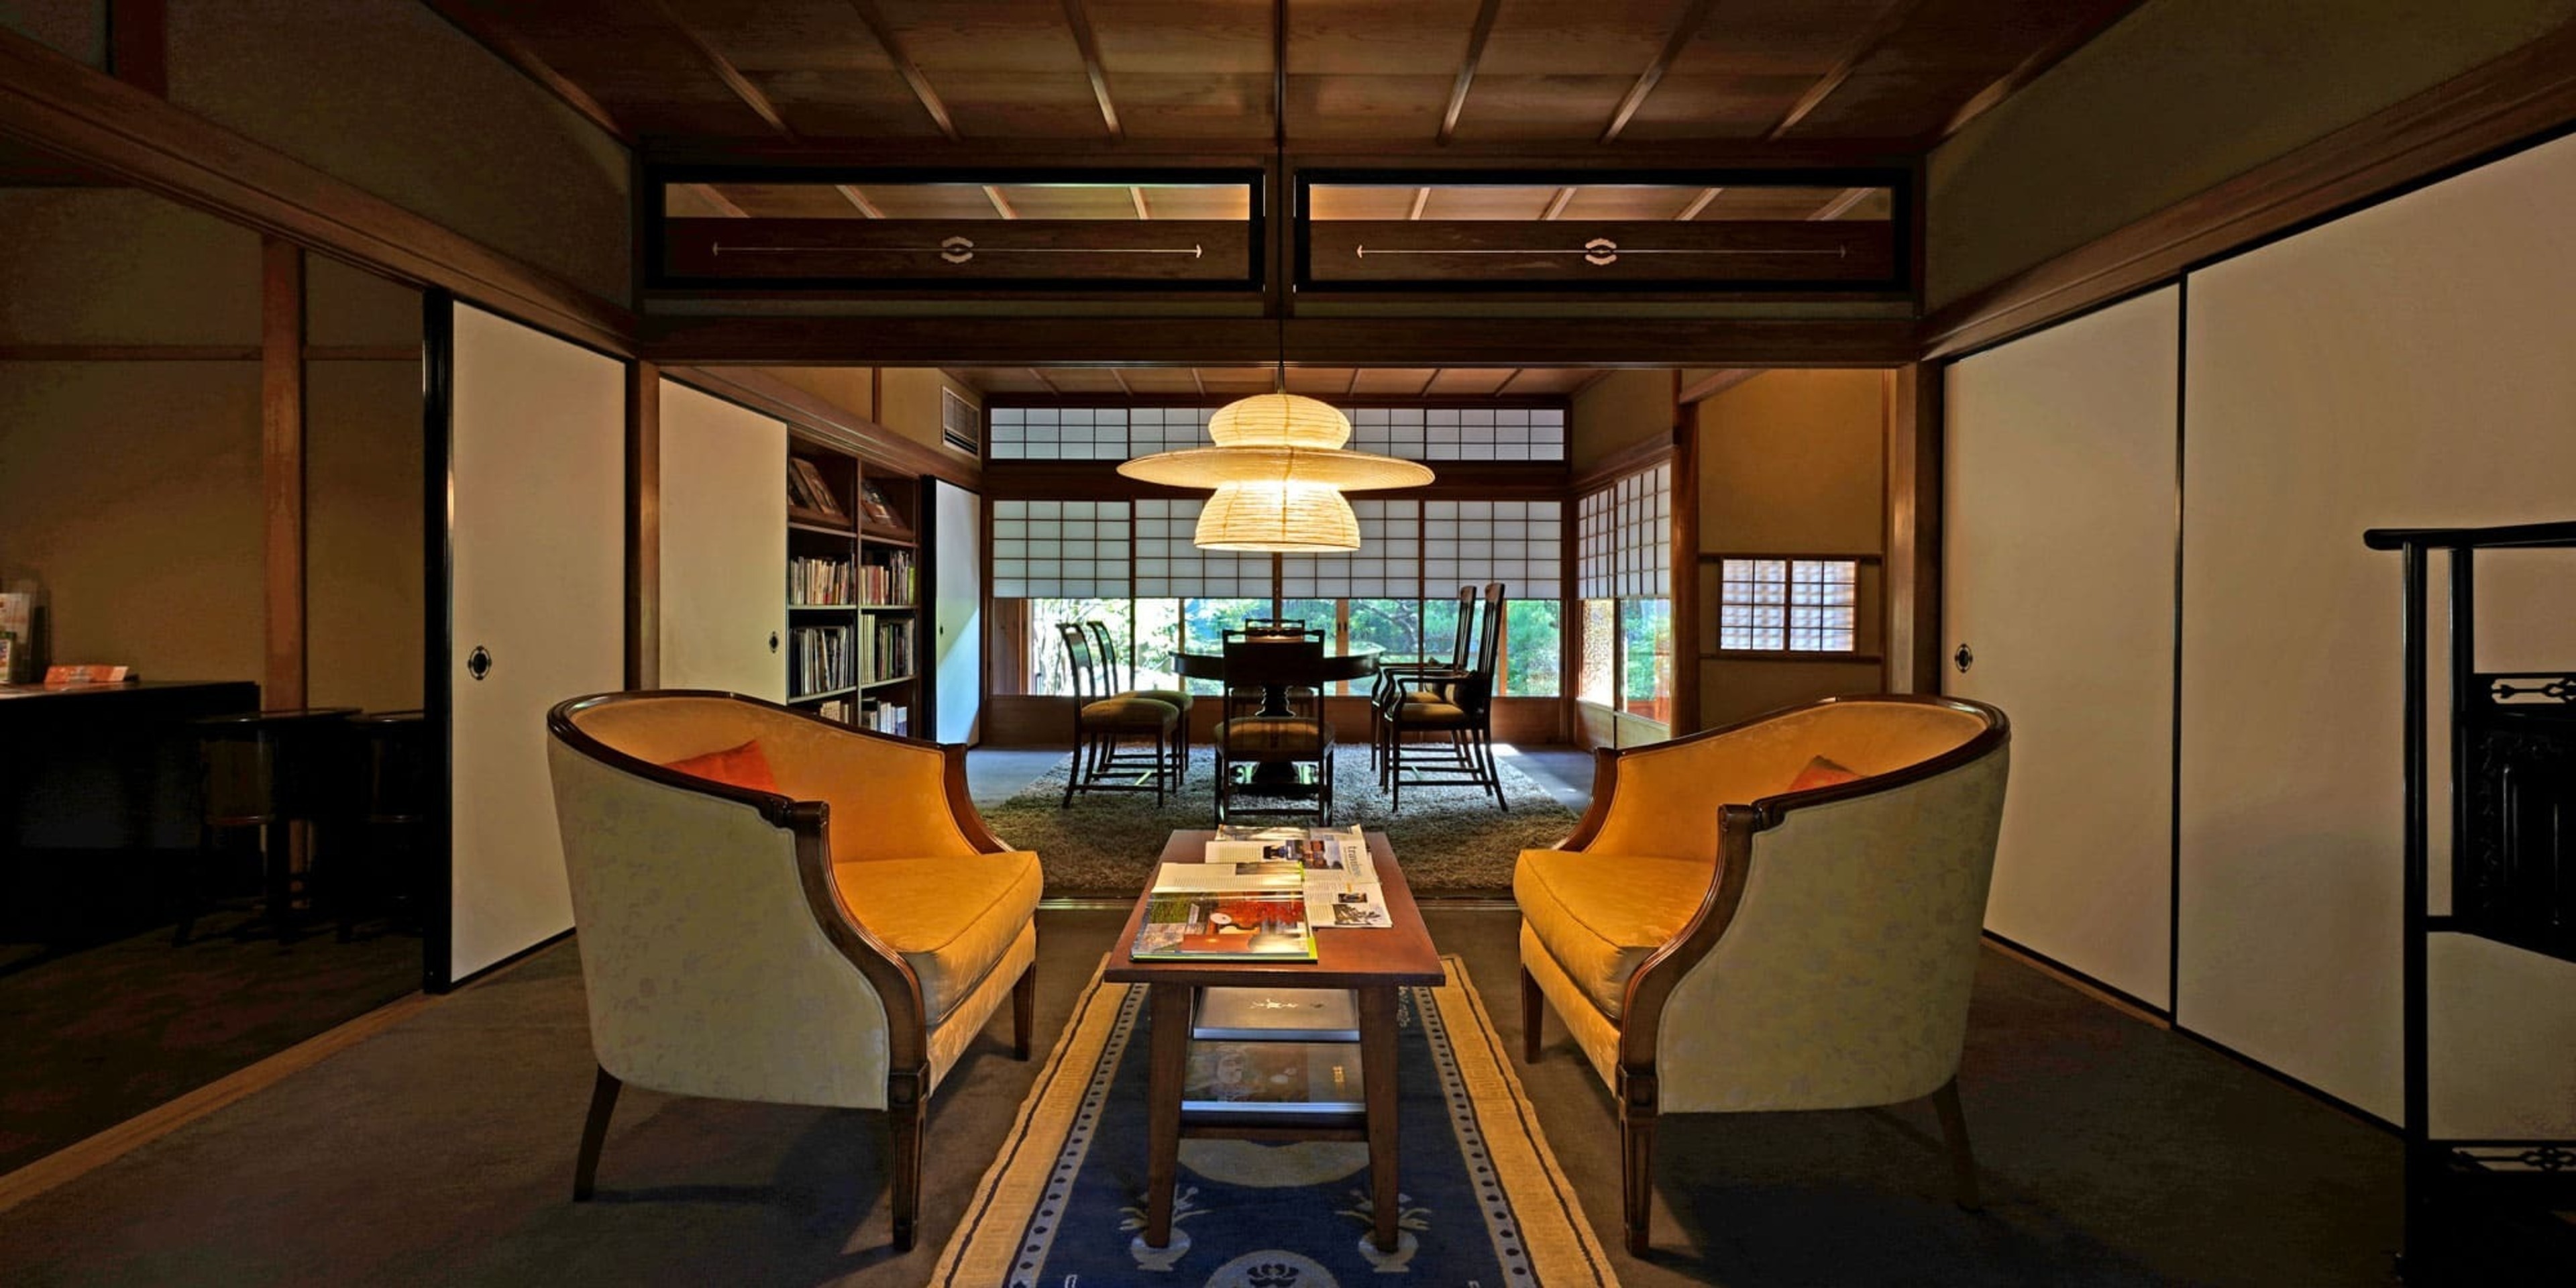 洛北は金閣寺のすぐ傍、仁壽殿は京都でのロングステイに最適なマンスリー賃貸マンションです。